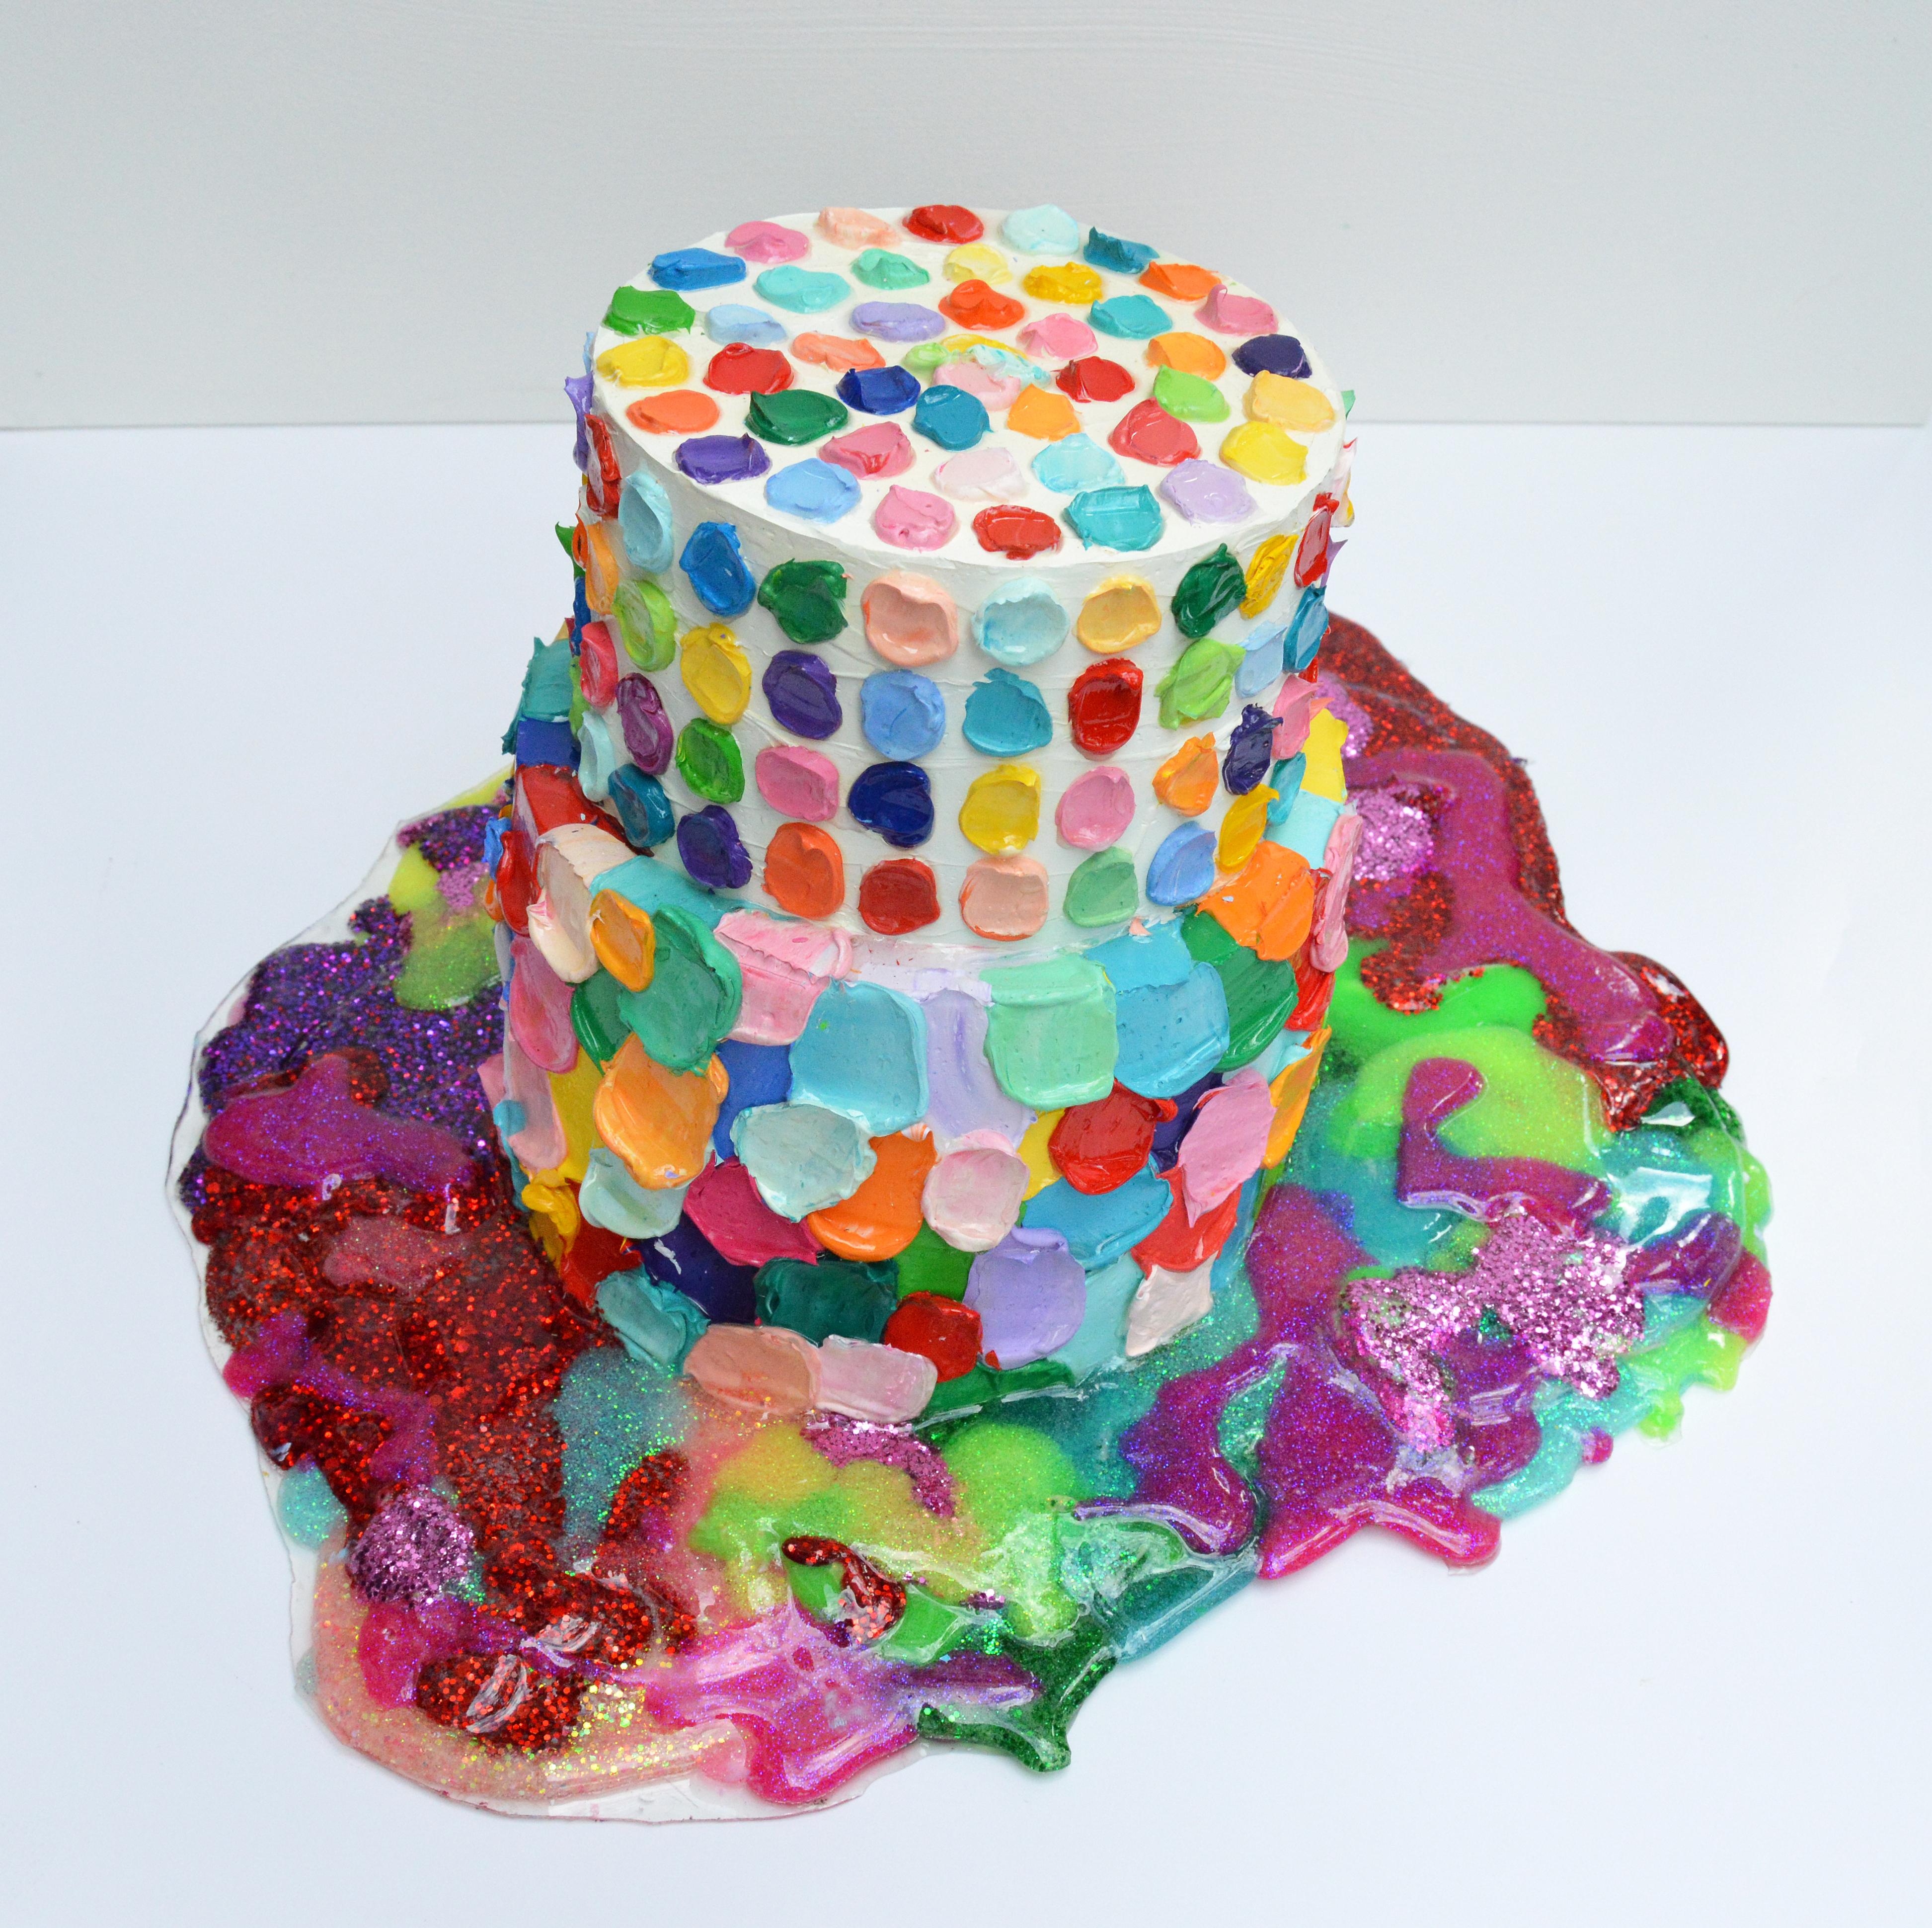 Puddle of Yum, Original Pop-Art-Skulptur
Diese gemeinsame Kuchenskulptur wurde von Ann-Marie Coolick und der Künstlerin Betsy Enzensberger aus Palm Springs geschaffen. Diese köstliche Kuchenskulptur ist 7,5